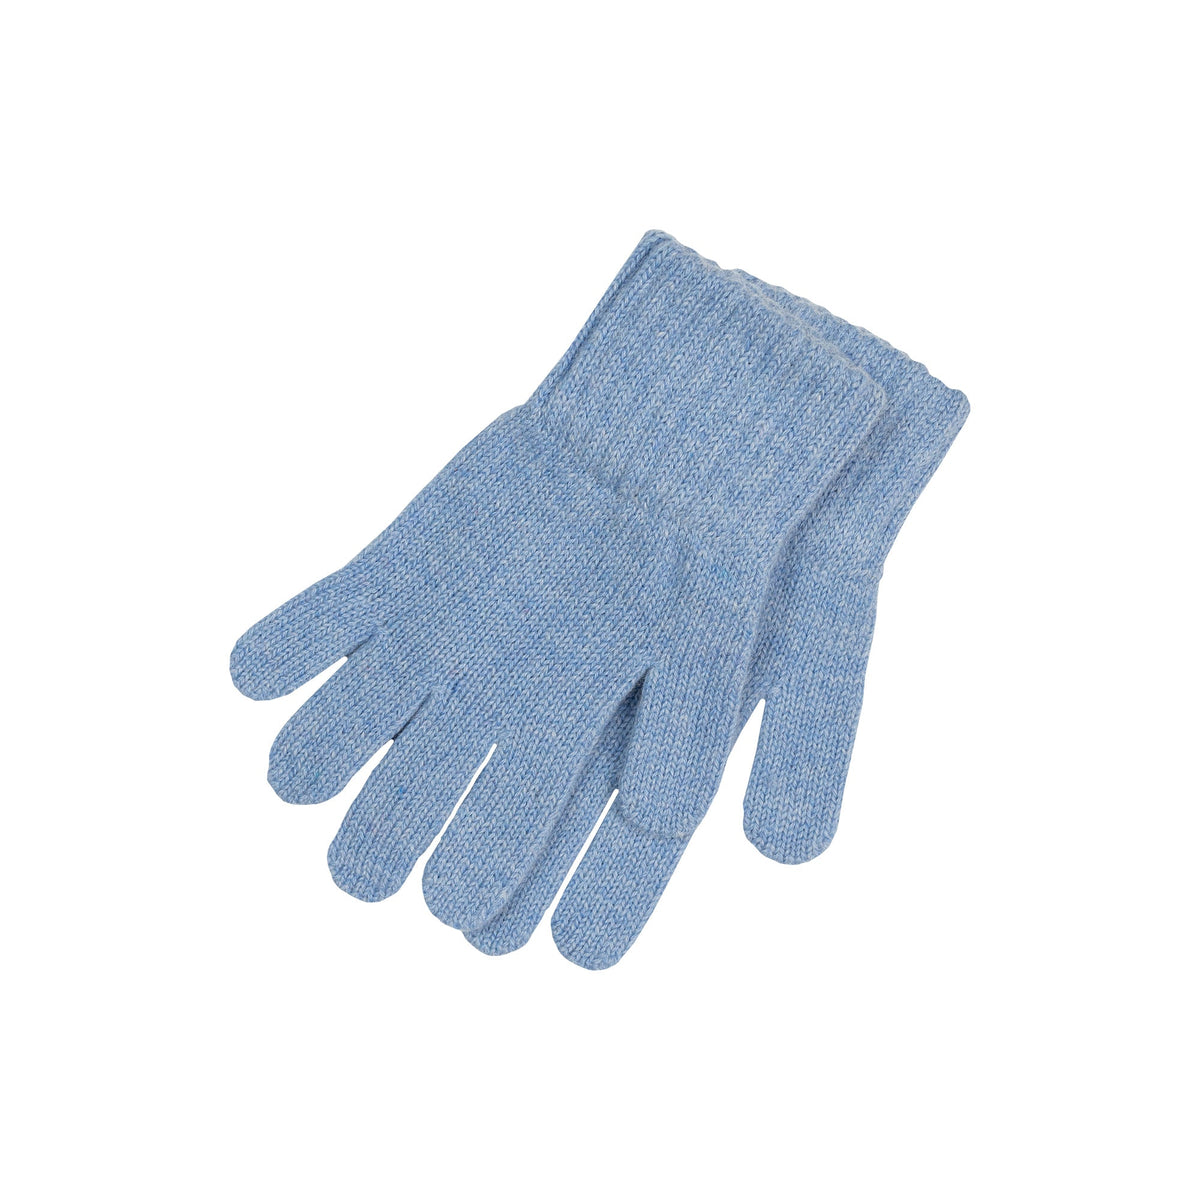 MENIQUE Knit Gloves Cashmere Blend